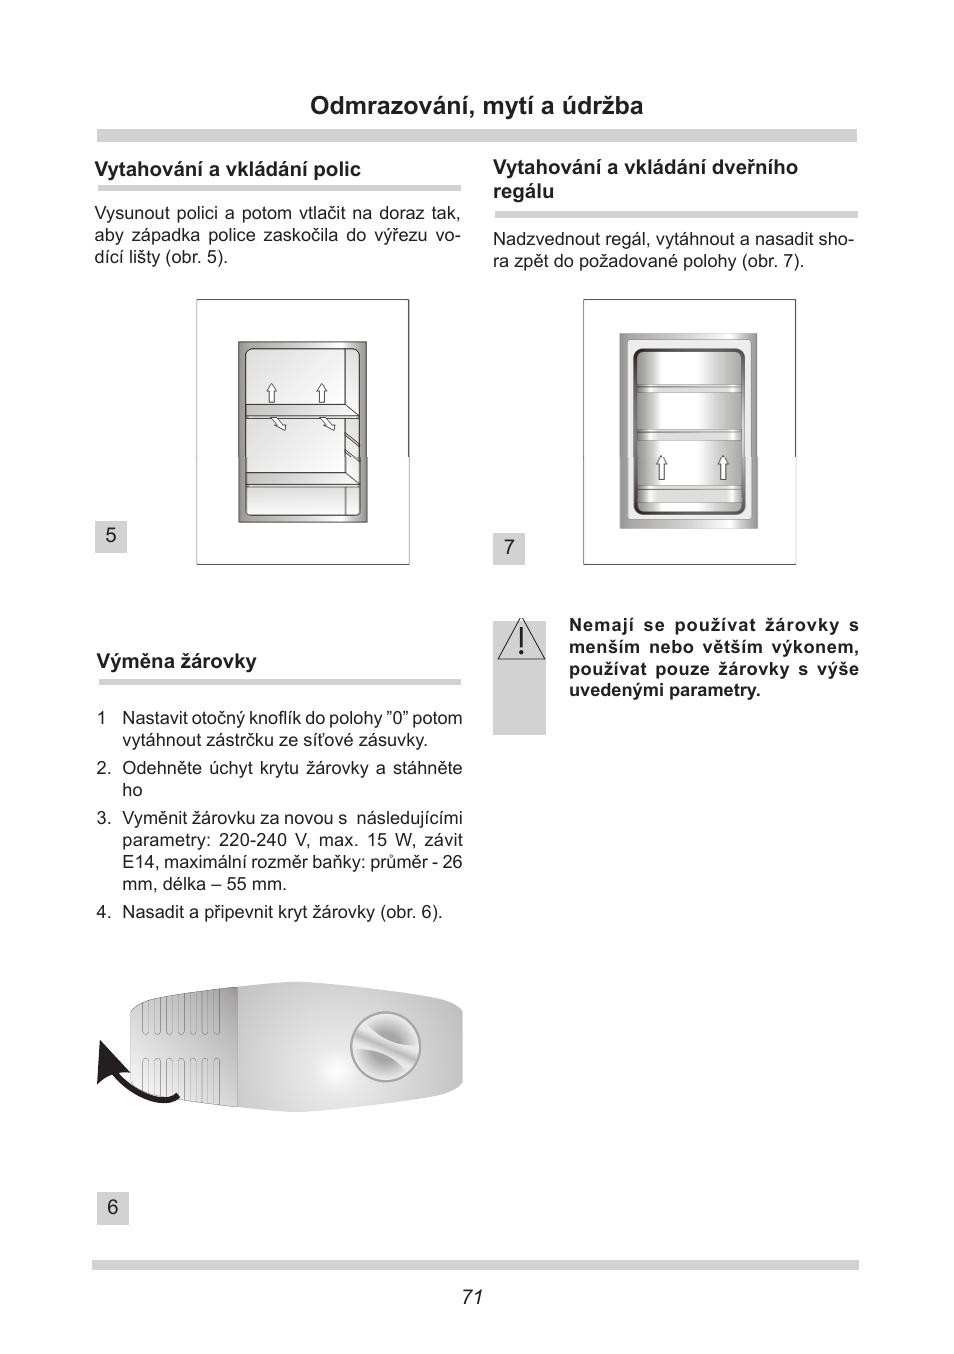 Odmrazování, mytí a údržba | AMICA UVKS 16149 DE User Manual | Page 71 / 156